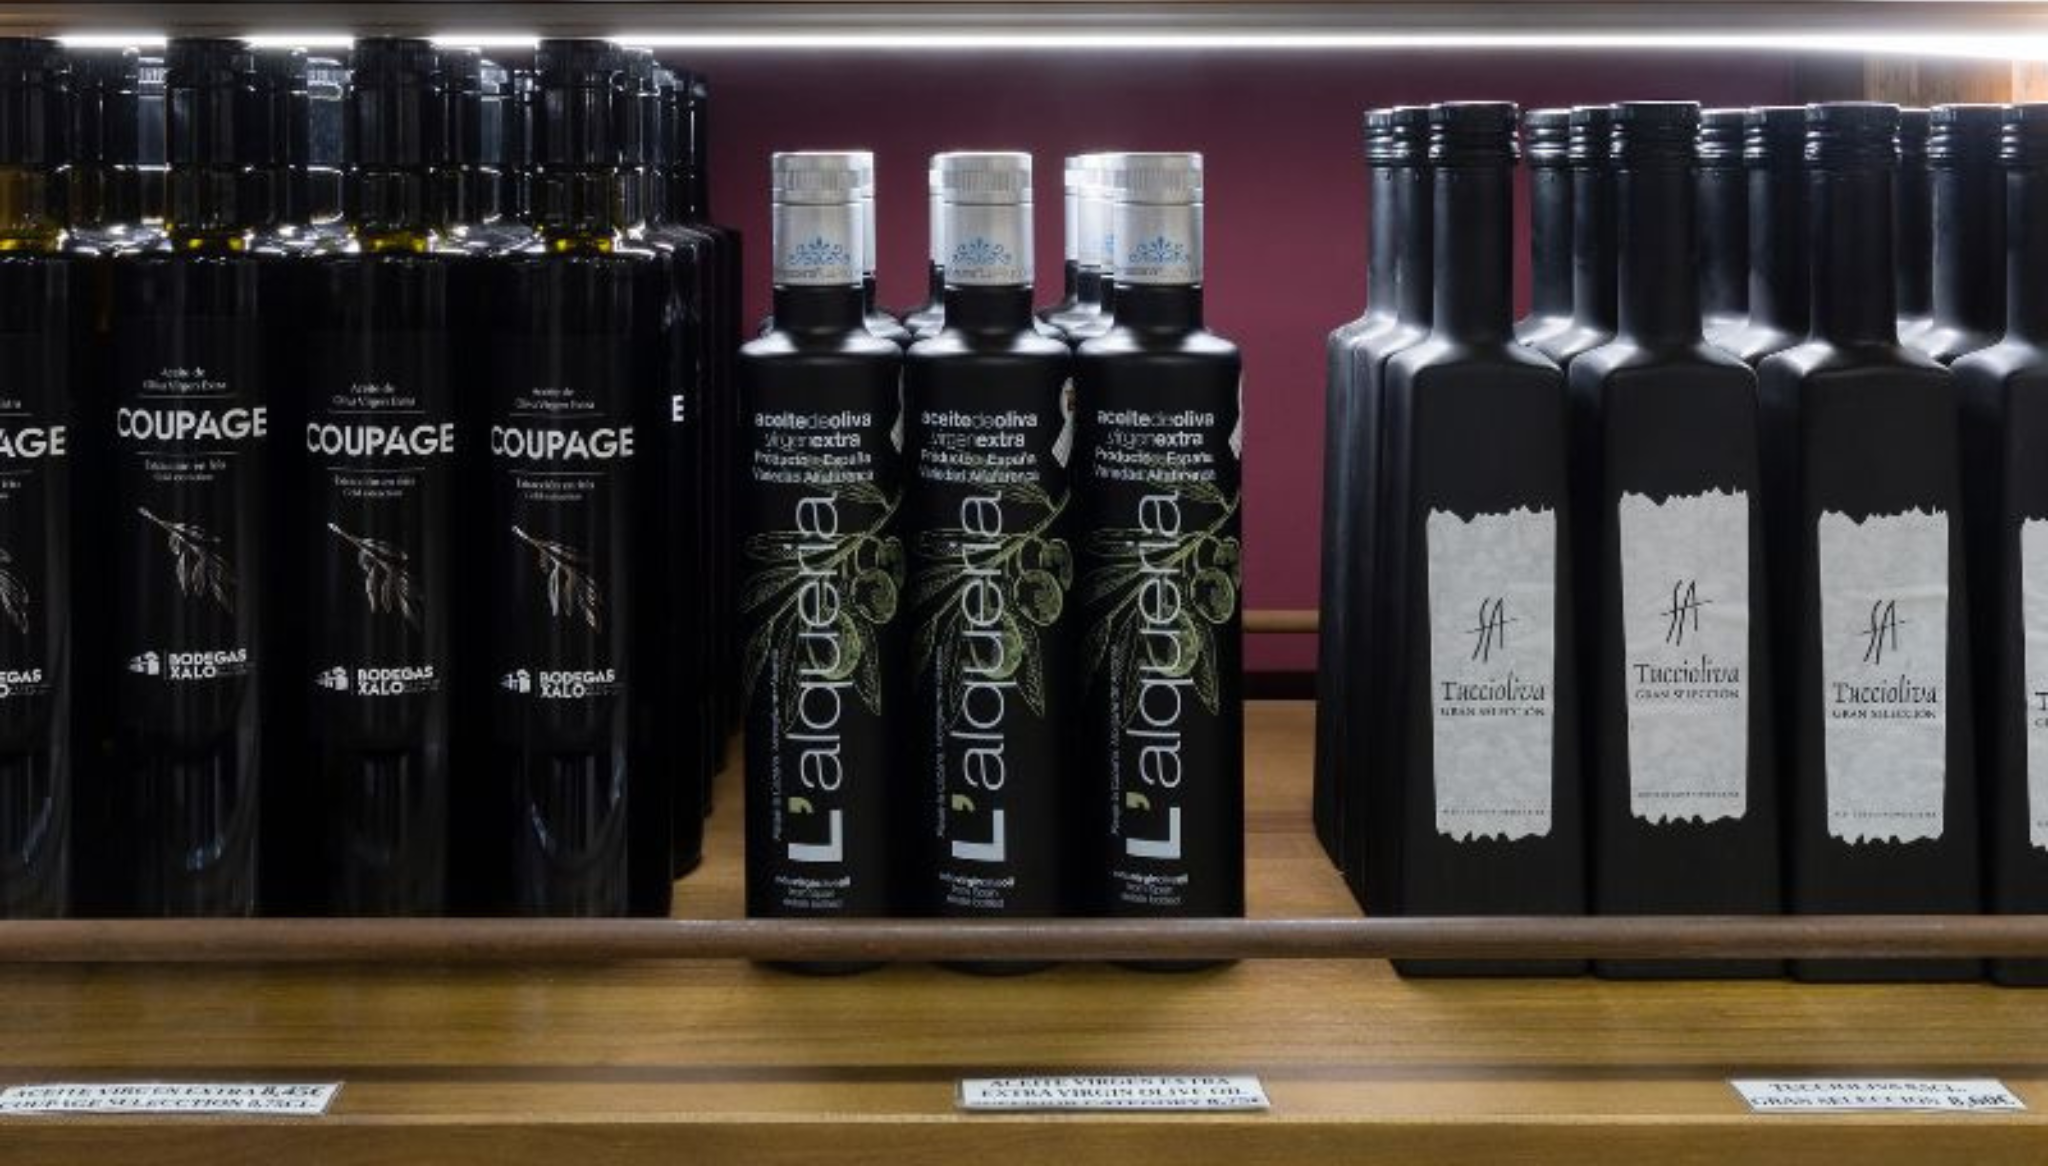 Cata de vinos y productos gourmet en Bodegas Xaló